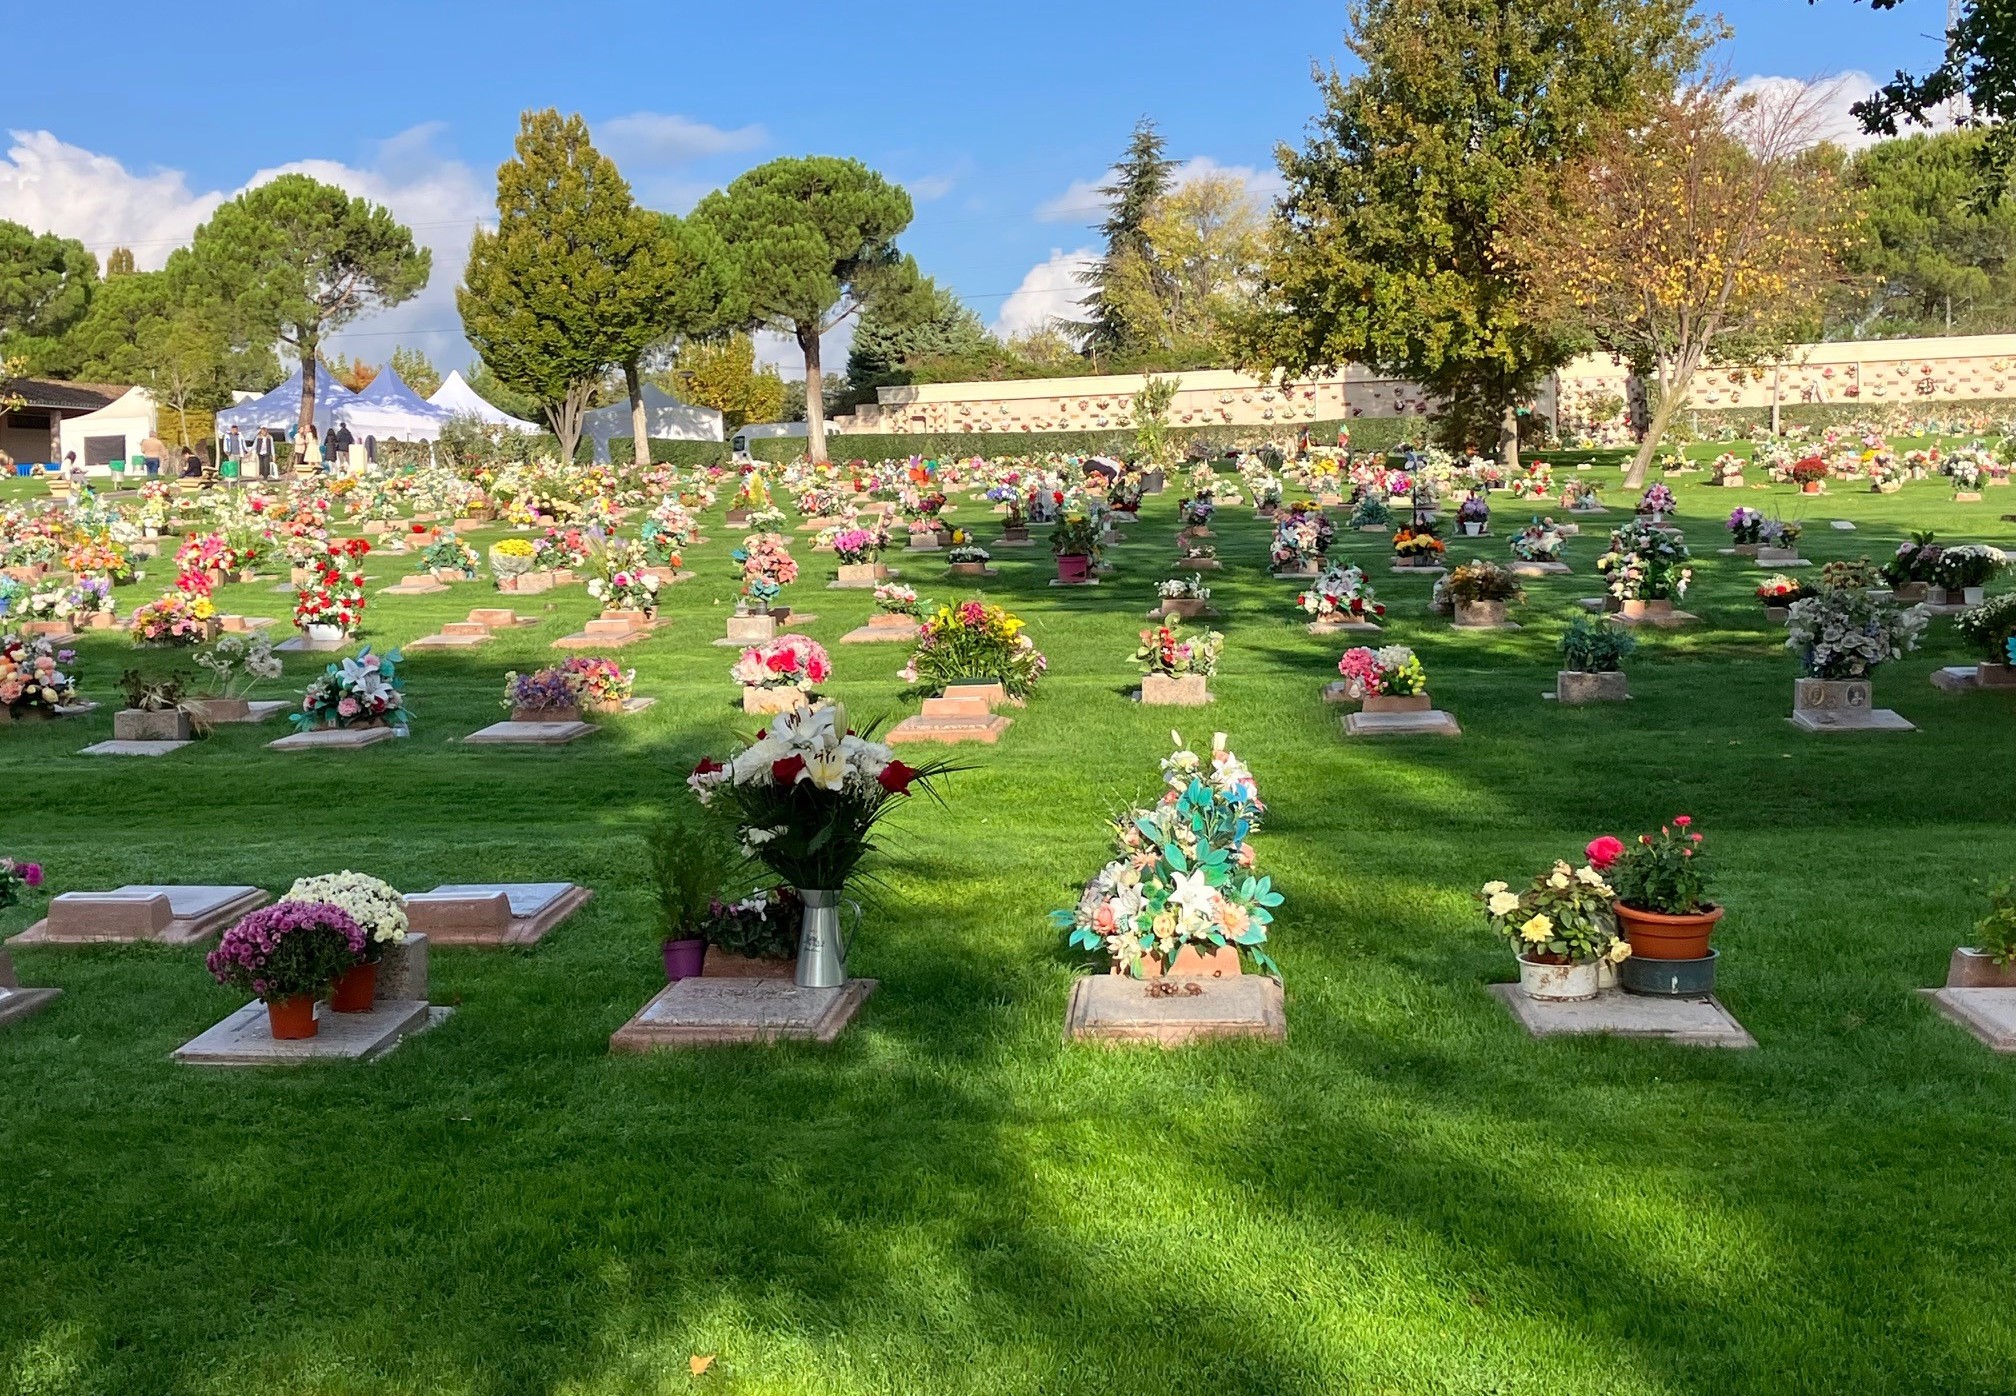 El Parque Cementerio de La Paz de Alcobendas hará una suelta de palomas en memoria de las personas fallecidas